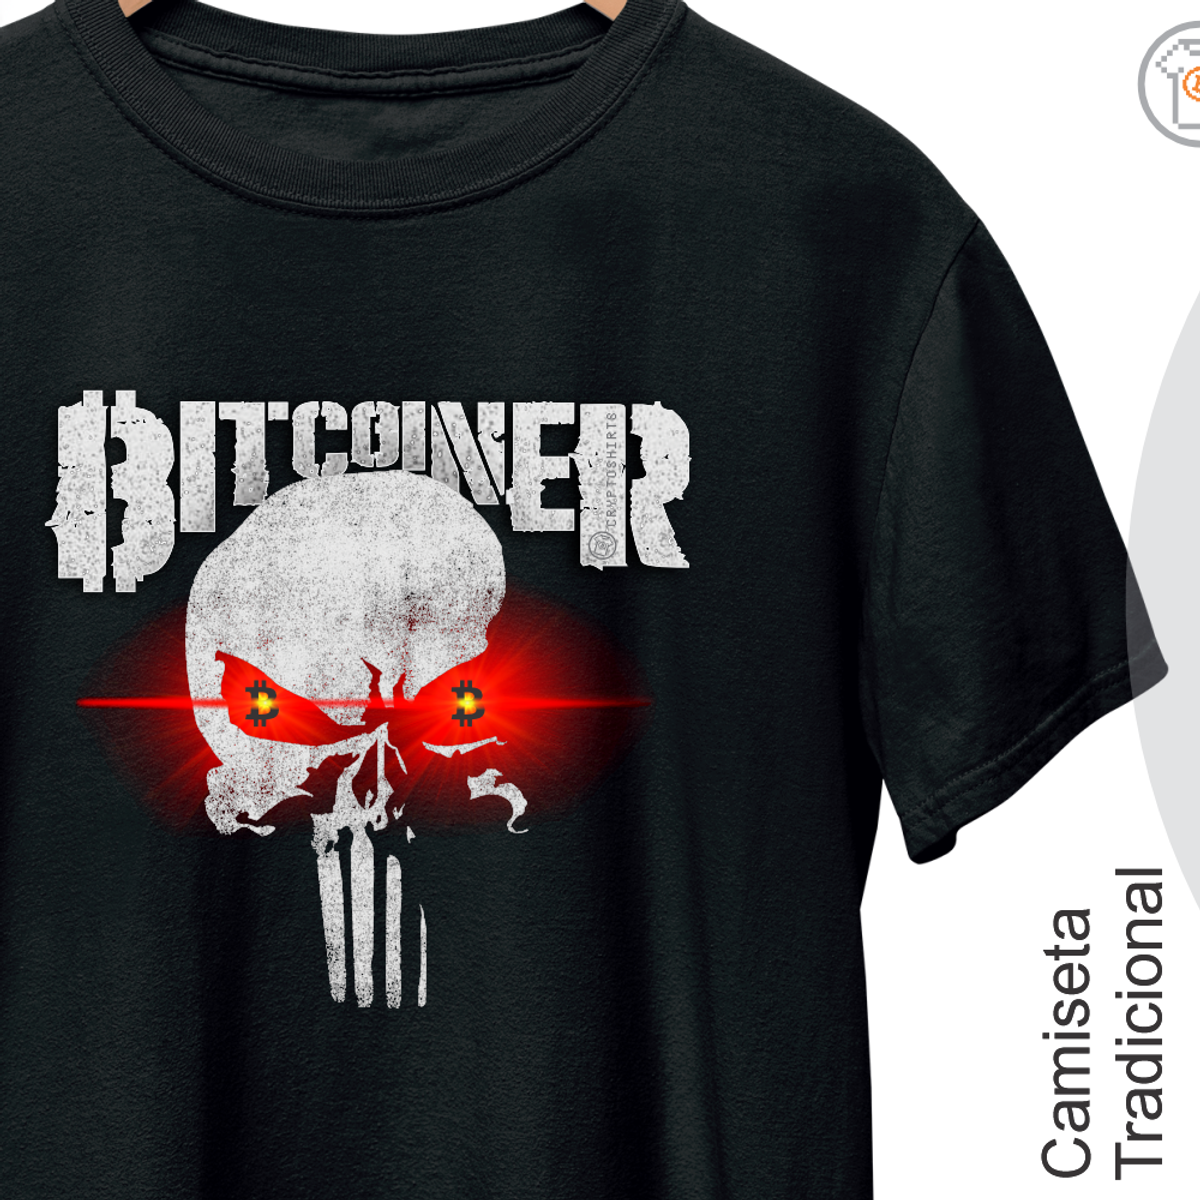 Nome do produto: Camiseta Bitcoiner 14